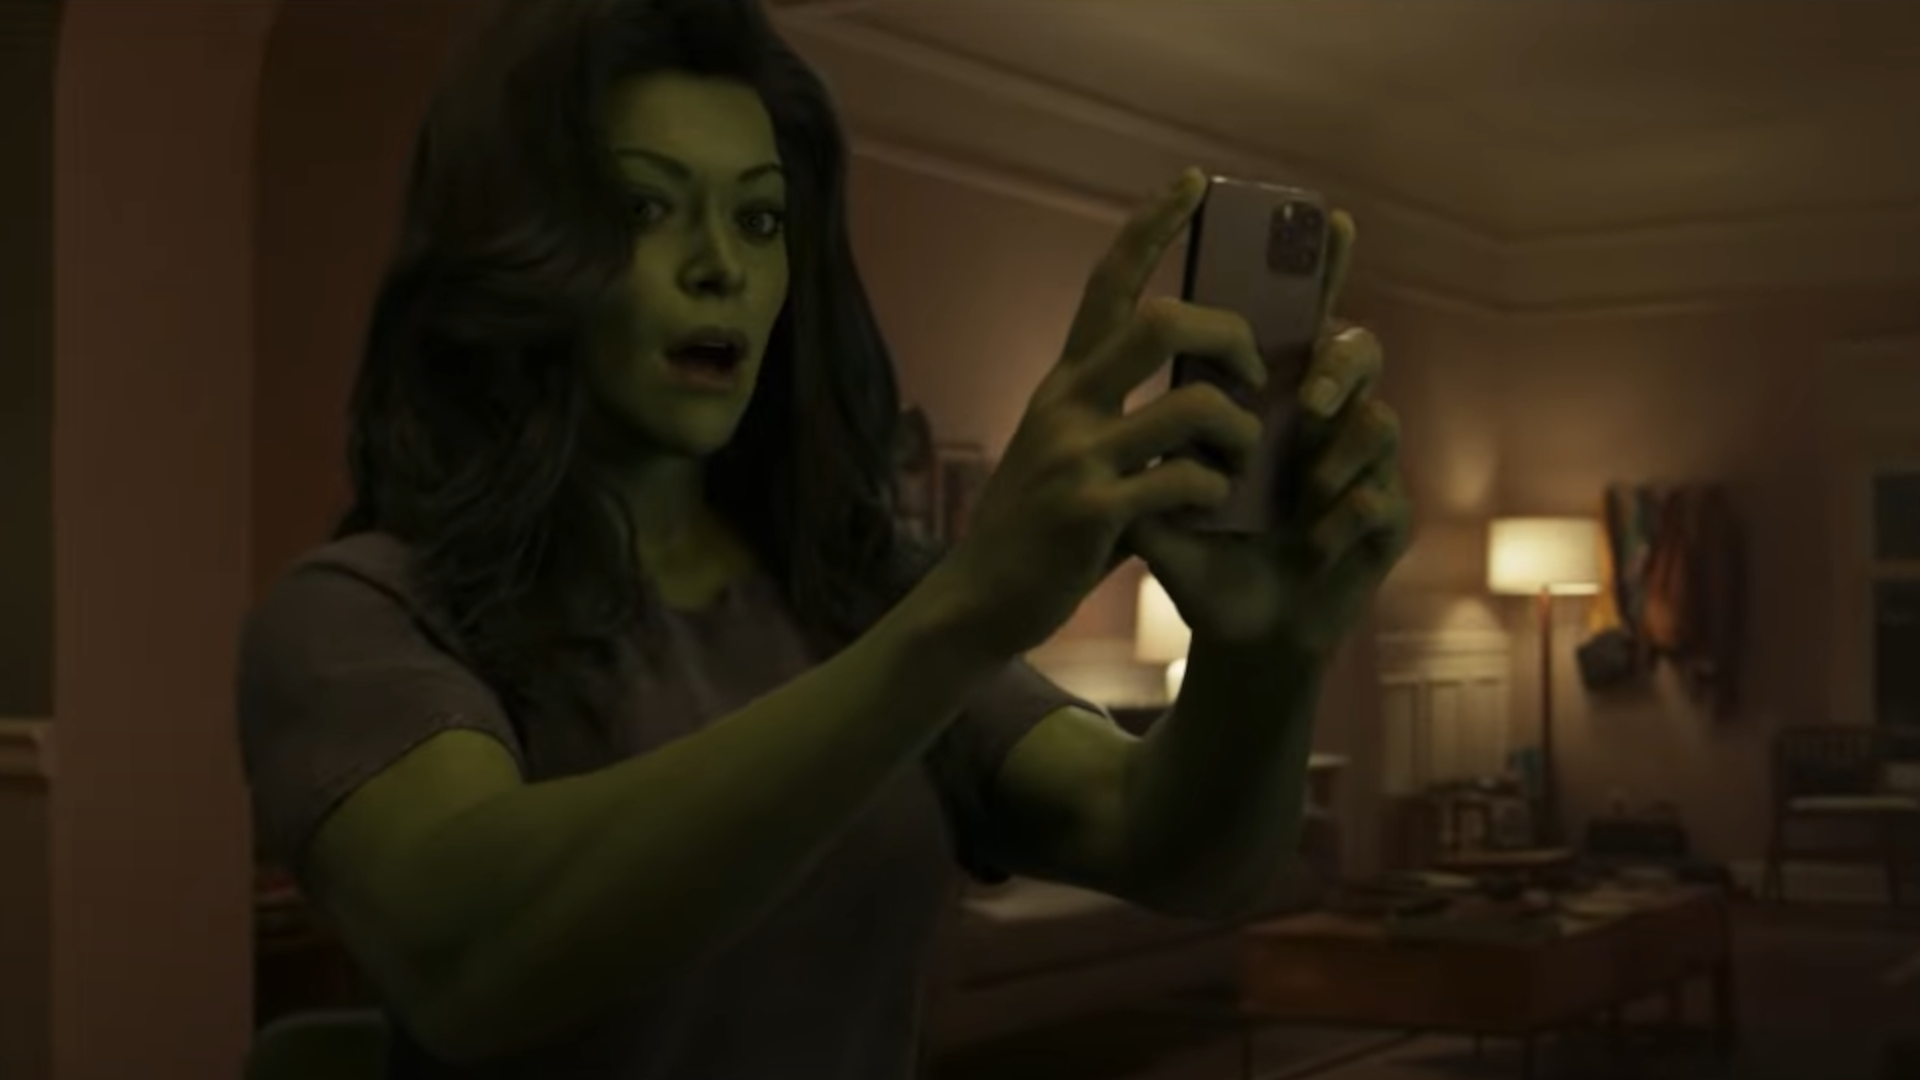 Mulher-Hulk: Como o Abominável voltou à forma humana?